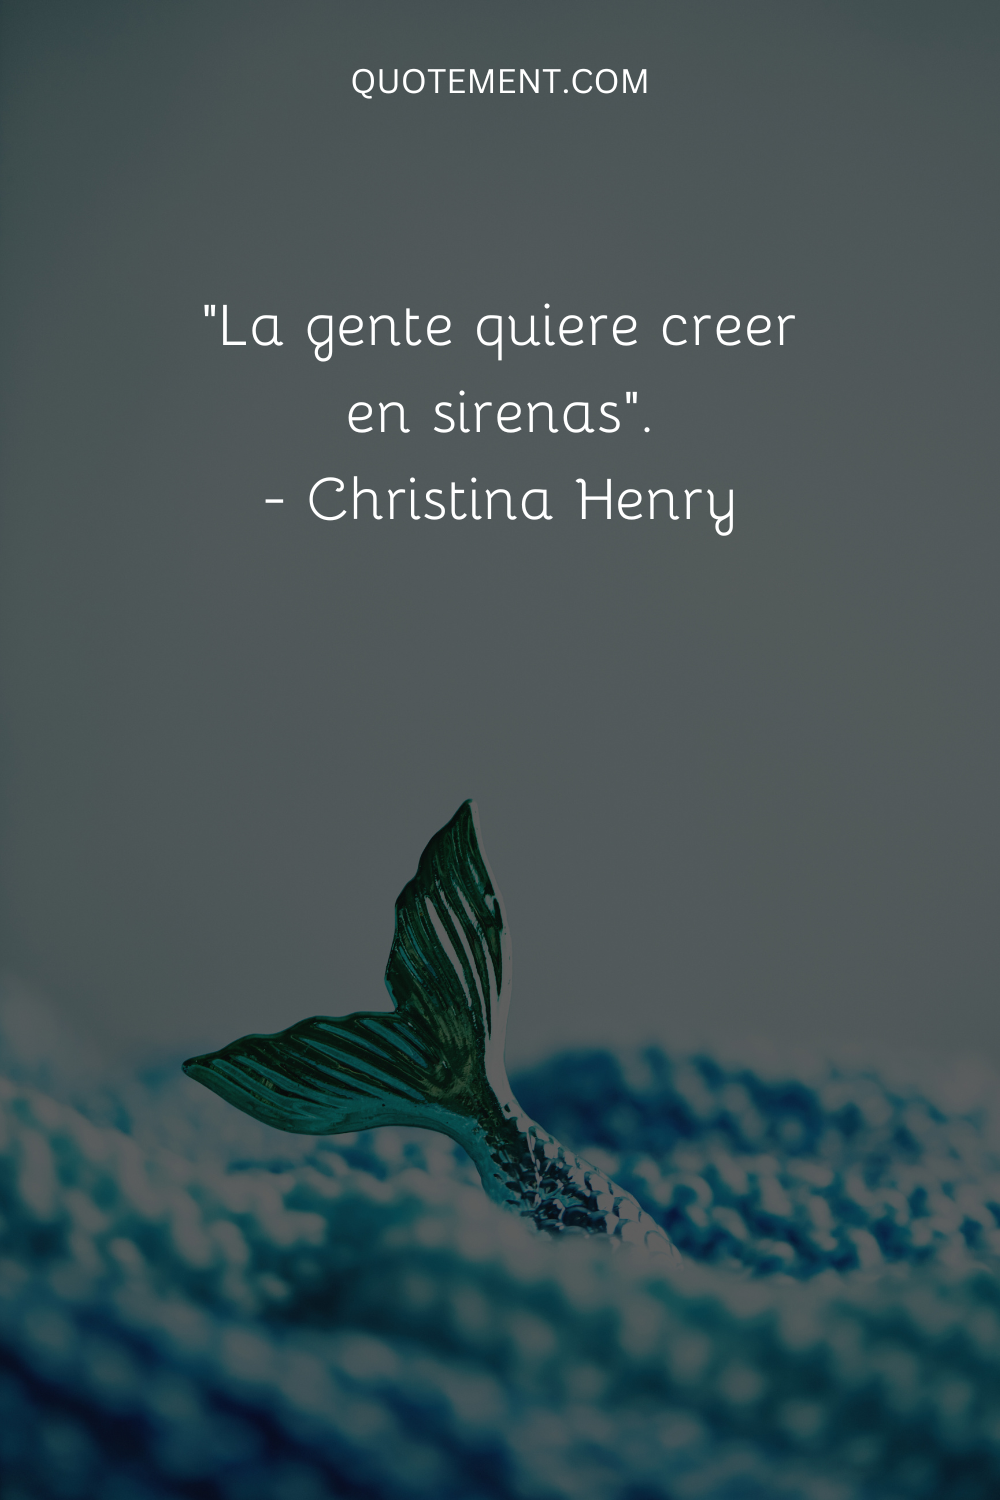 "La gente quiere creer en sirenas". - Christina Henry